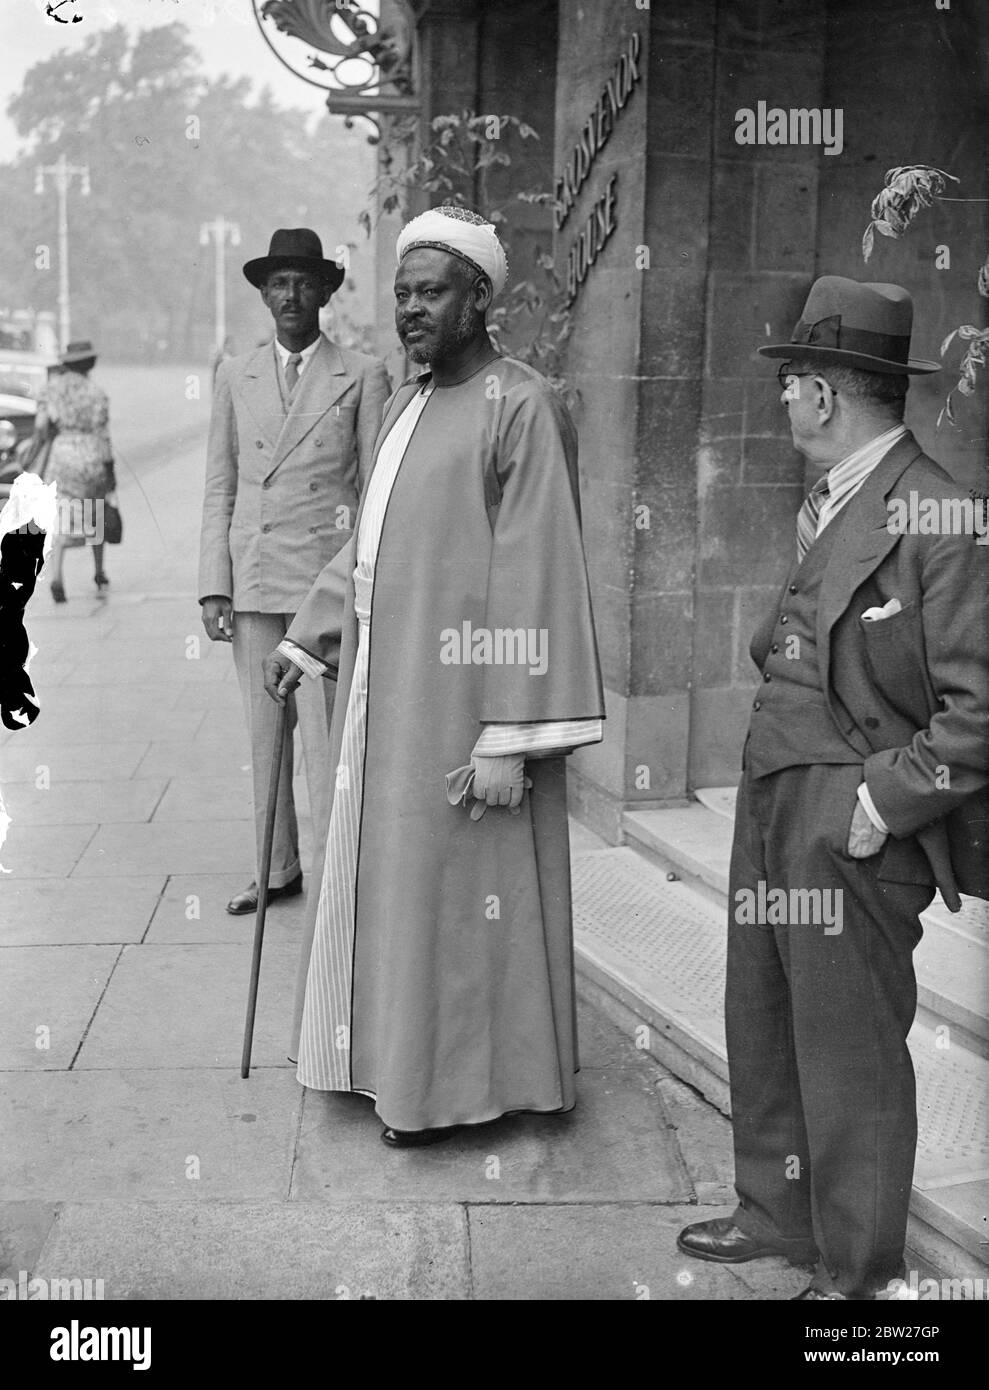 El Sayed Sir Abdel Ralman el Mahdi, ältester lebender Sohn des Mahdi, der vor 50 Jahren die von Kitchener zermalmte Revolte leitete, besucht London in Begleitung seiner beiden Neffen und Enkel. Dieser Mahdi ist ein Ritter Kommandant des Ordens des Britischen Imperiums und ein Begleiter des Royal Victoria Ordens. 15 Juli 1937. Stockfoto